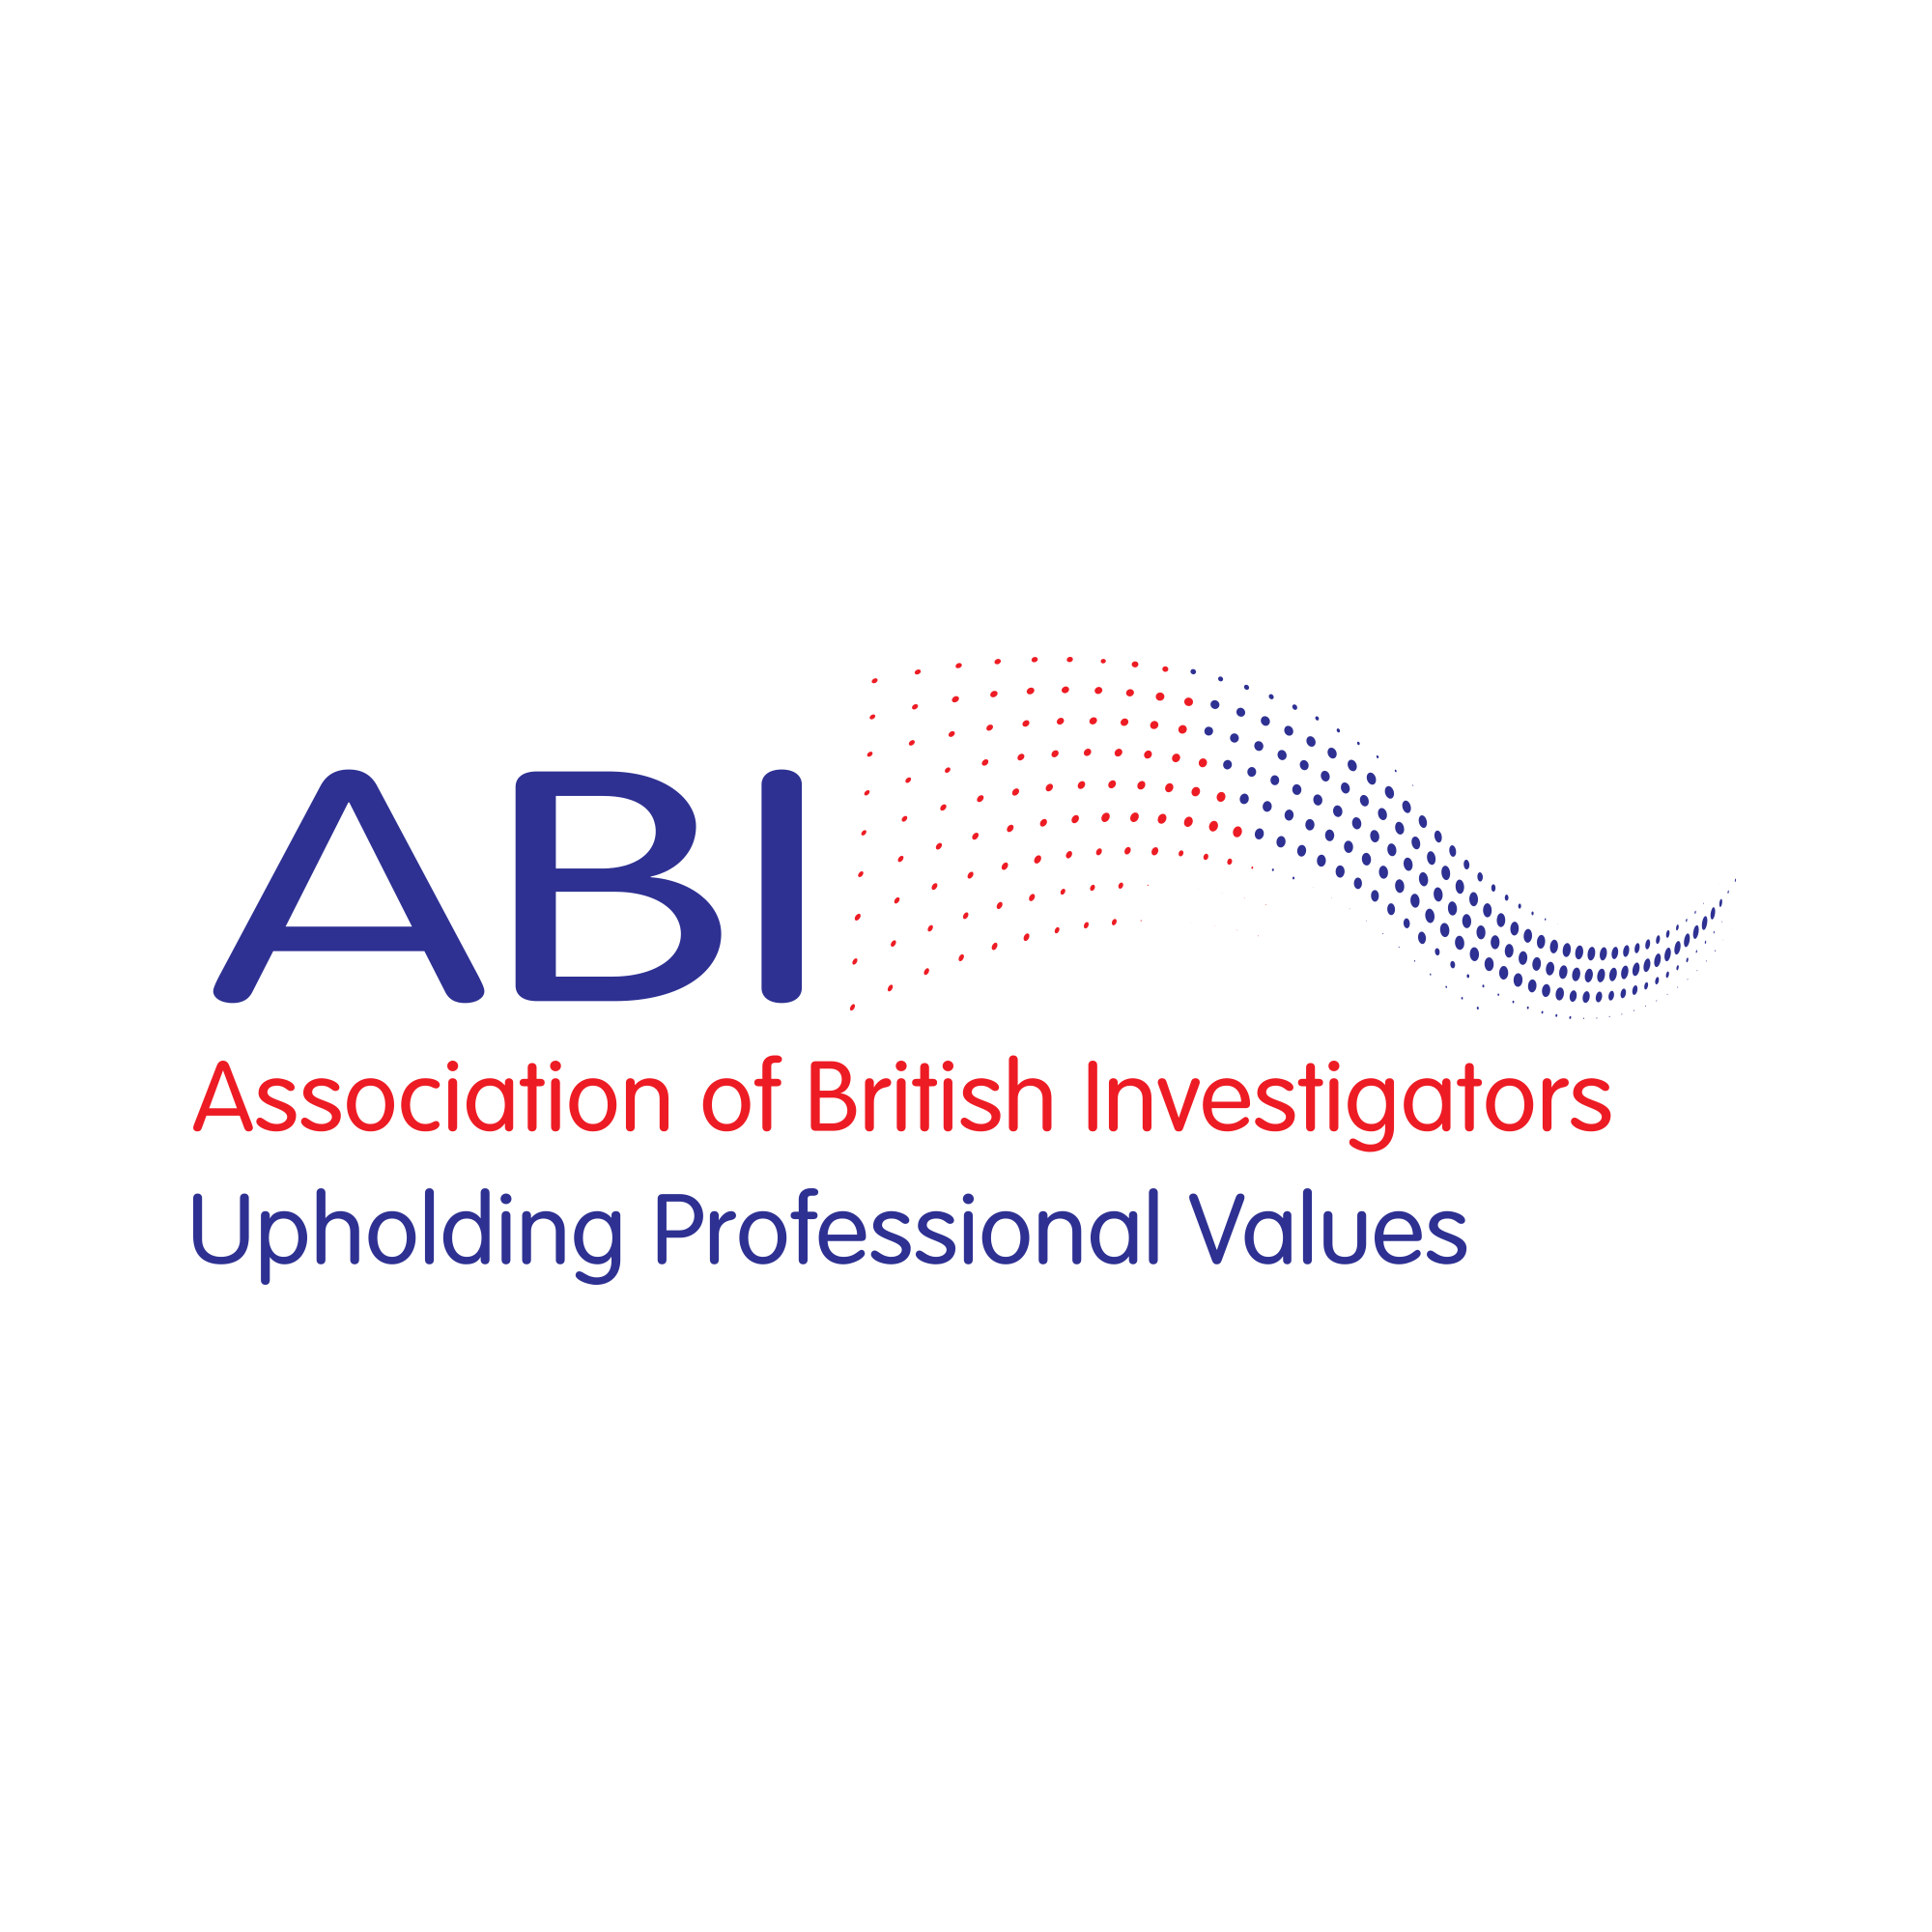 Association of British Investigators